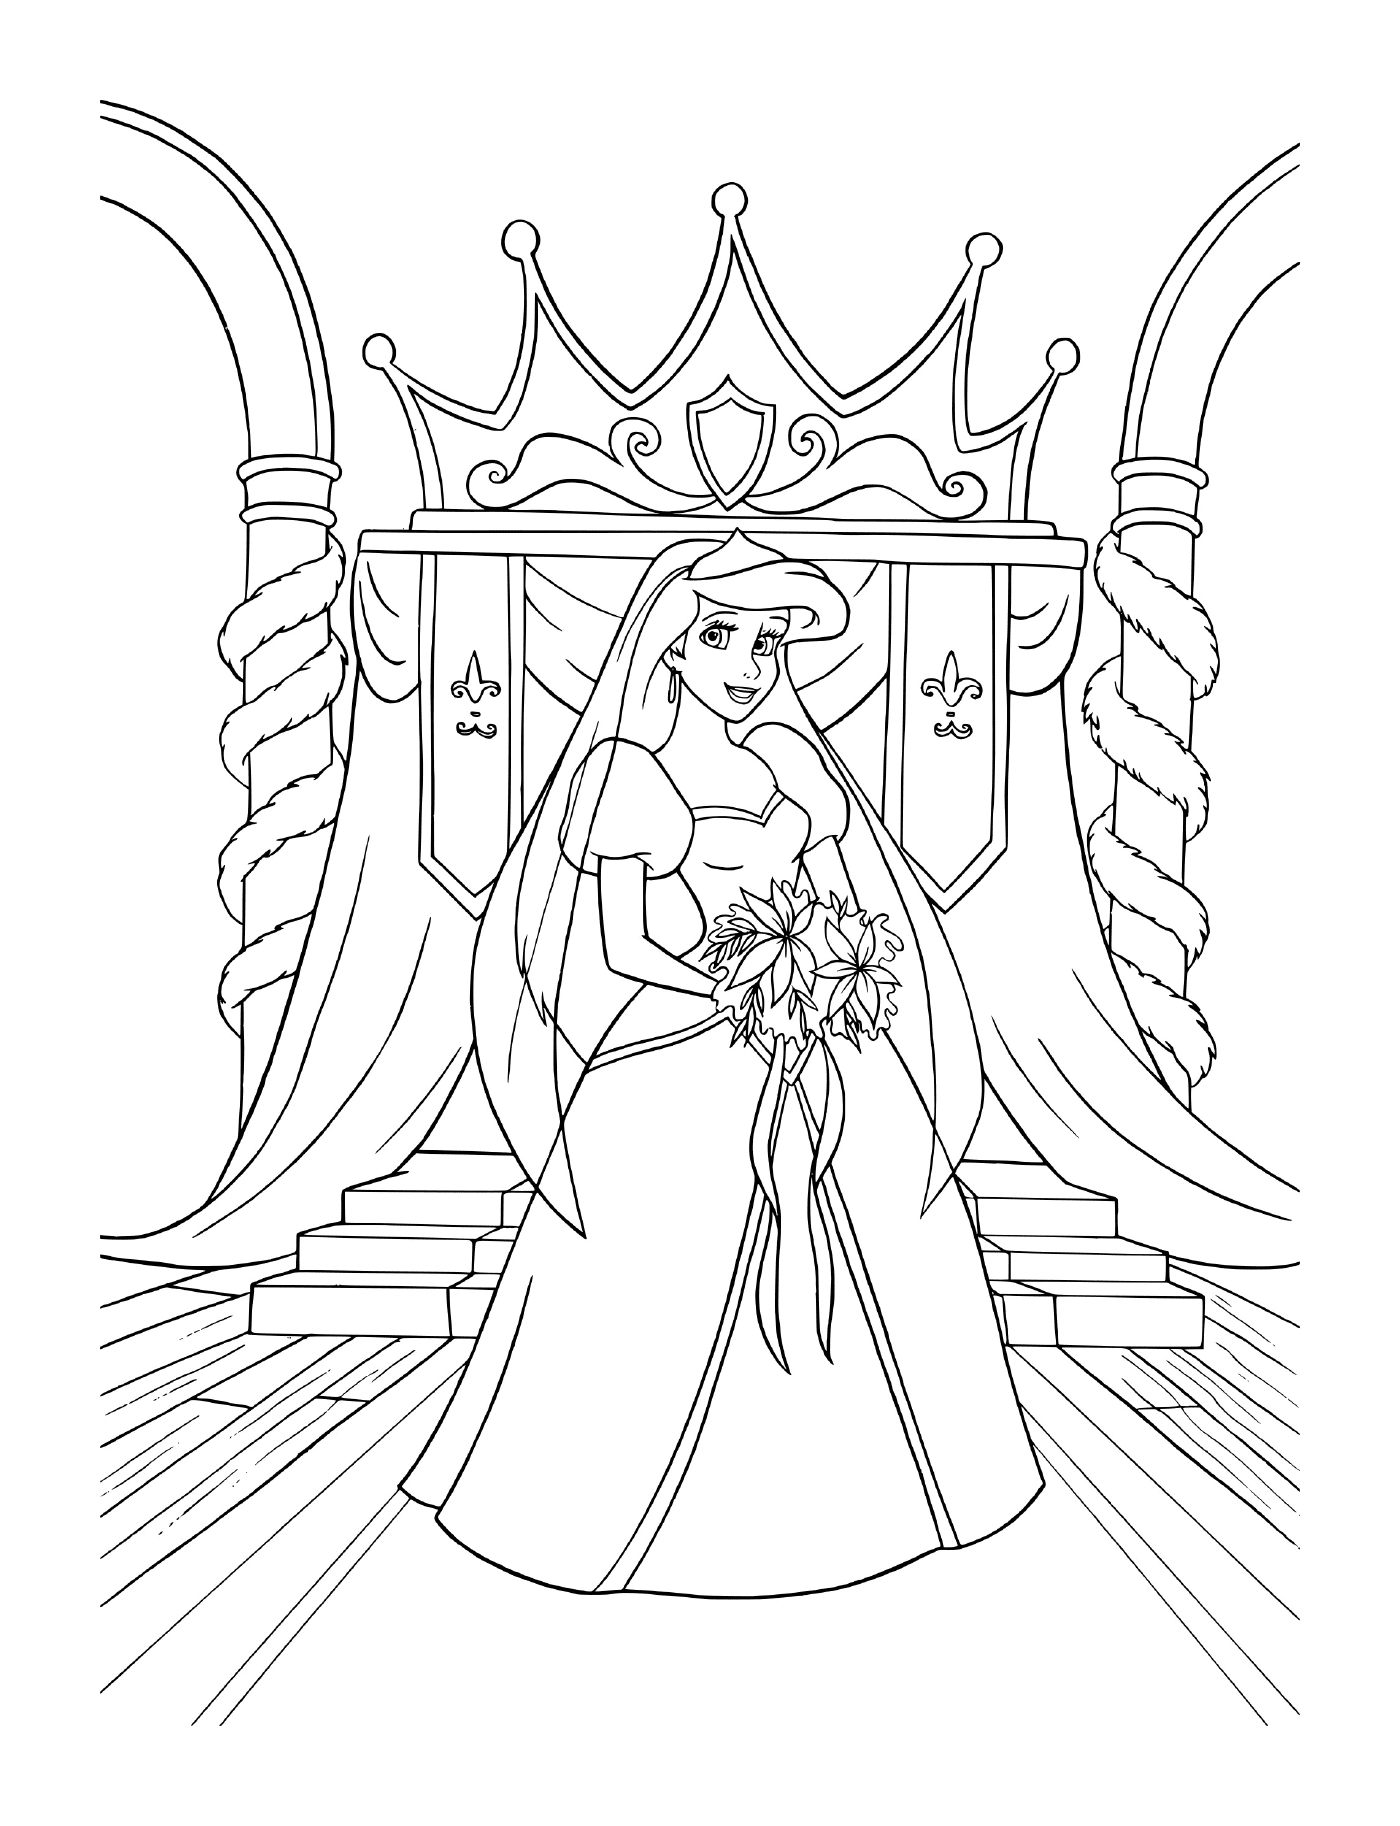  A bride in wedding dress sitting on a throne 